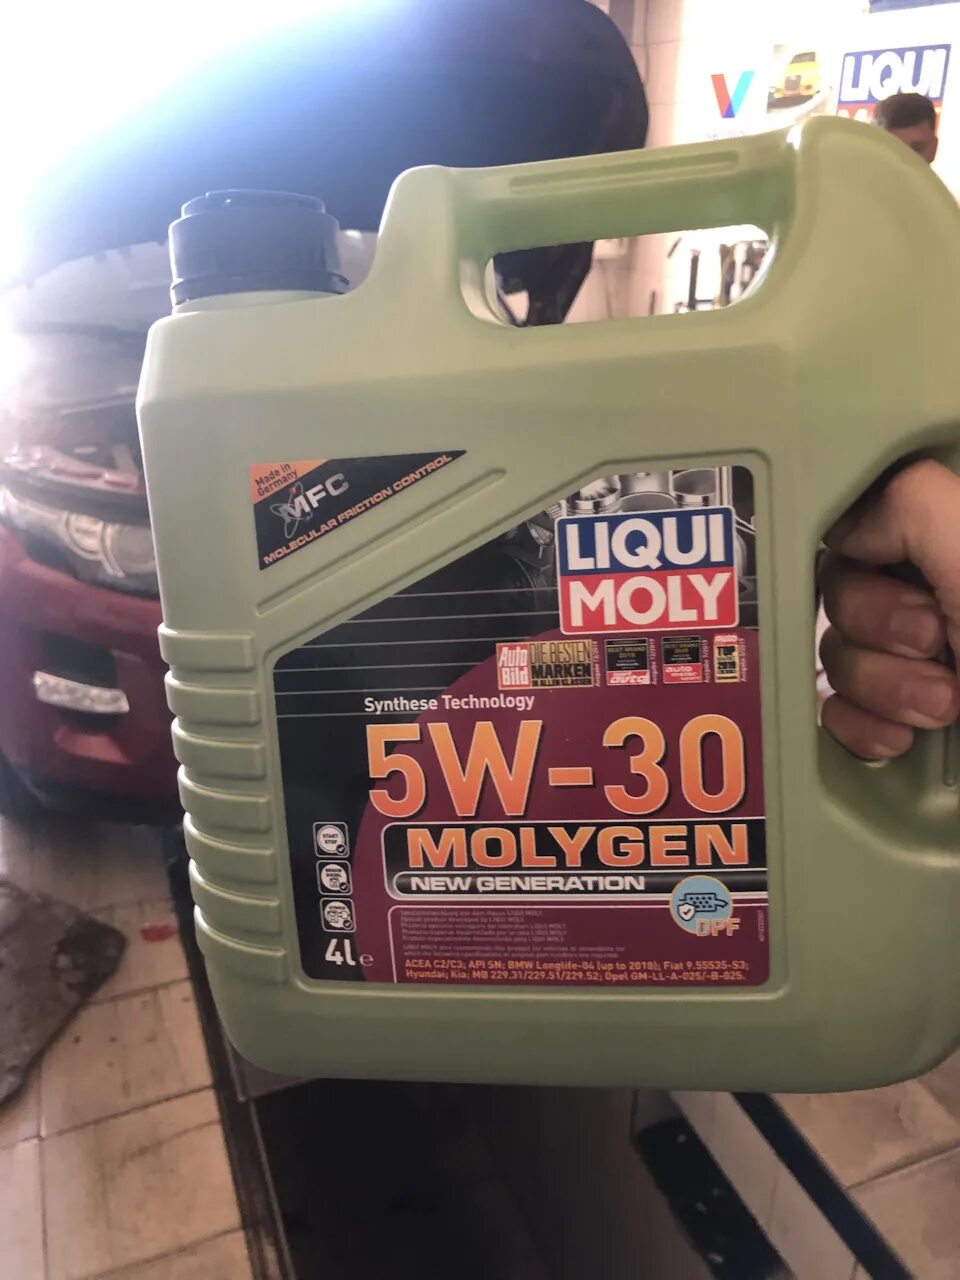 Liqui Moly 5w30. Ликви моли молиген 5w30. Моторное масло Liqui Moly Molygen 5w30 Diesel 4l. Liqui Moly Molygen 5w30 4л дизель. Масло моторное 5w30 ликви молли